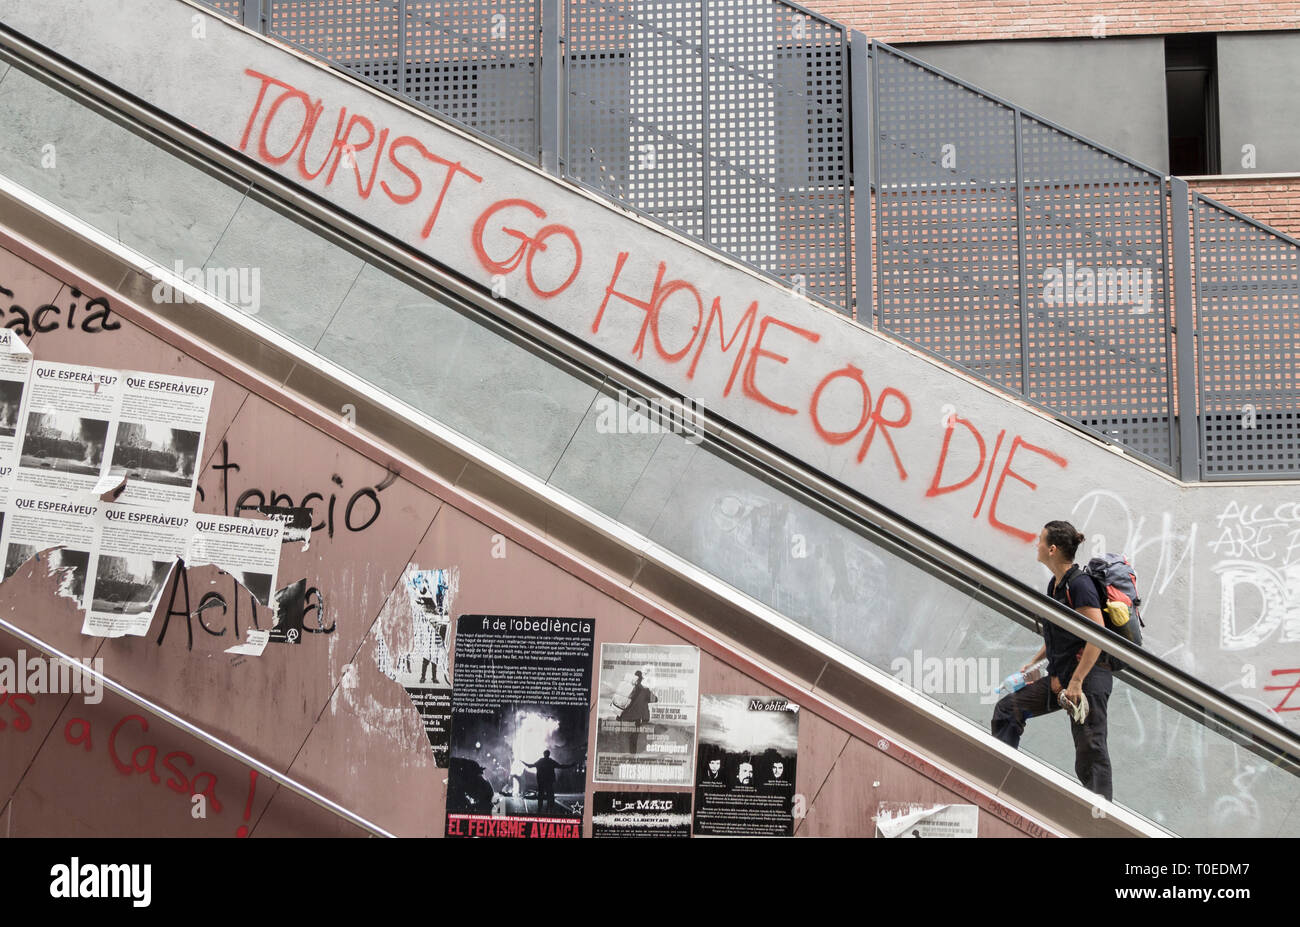 'Tourist Go home ou die' au mur près de l'escalier mécanique à Barcelone, Espagne. Concept de coronavirus... Banque D'Images